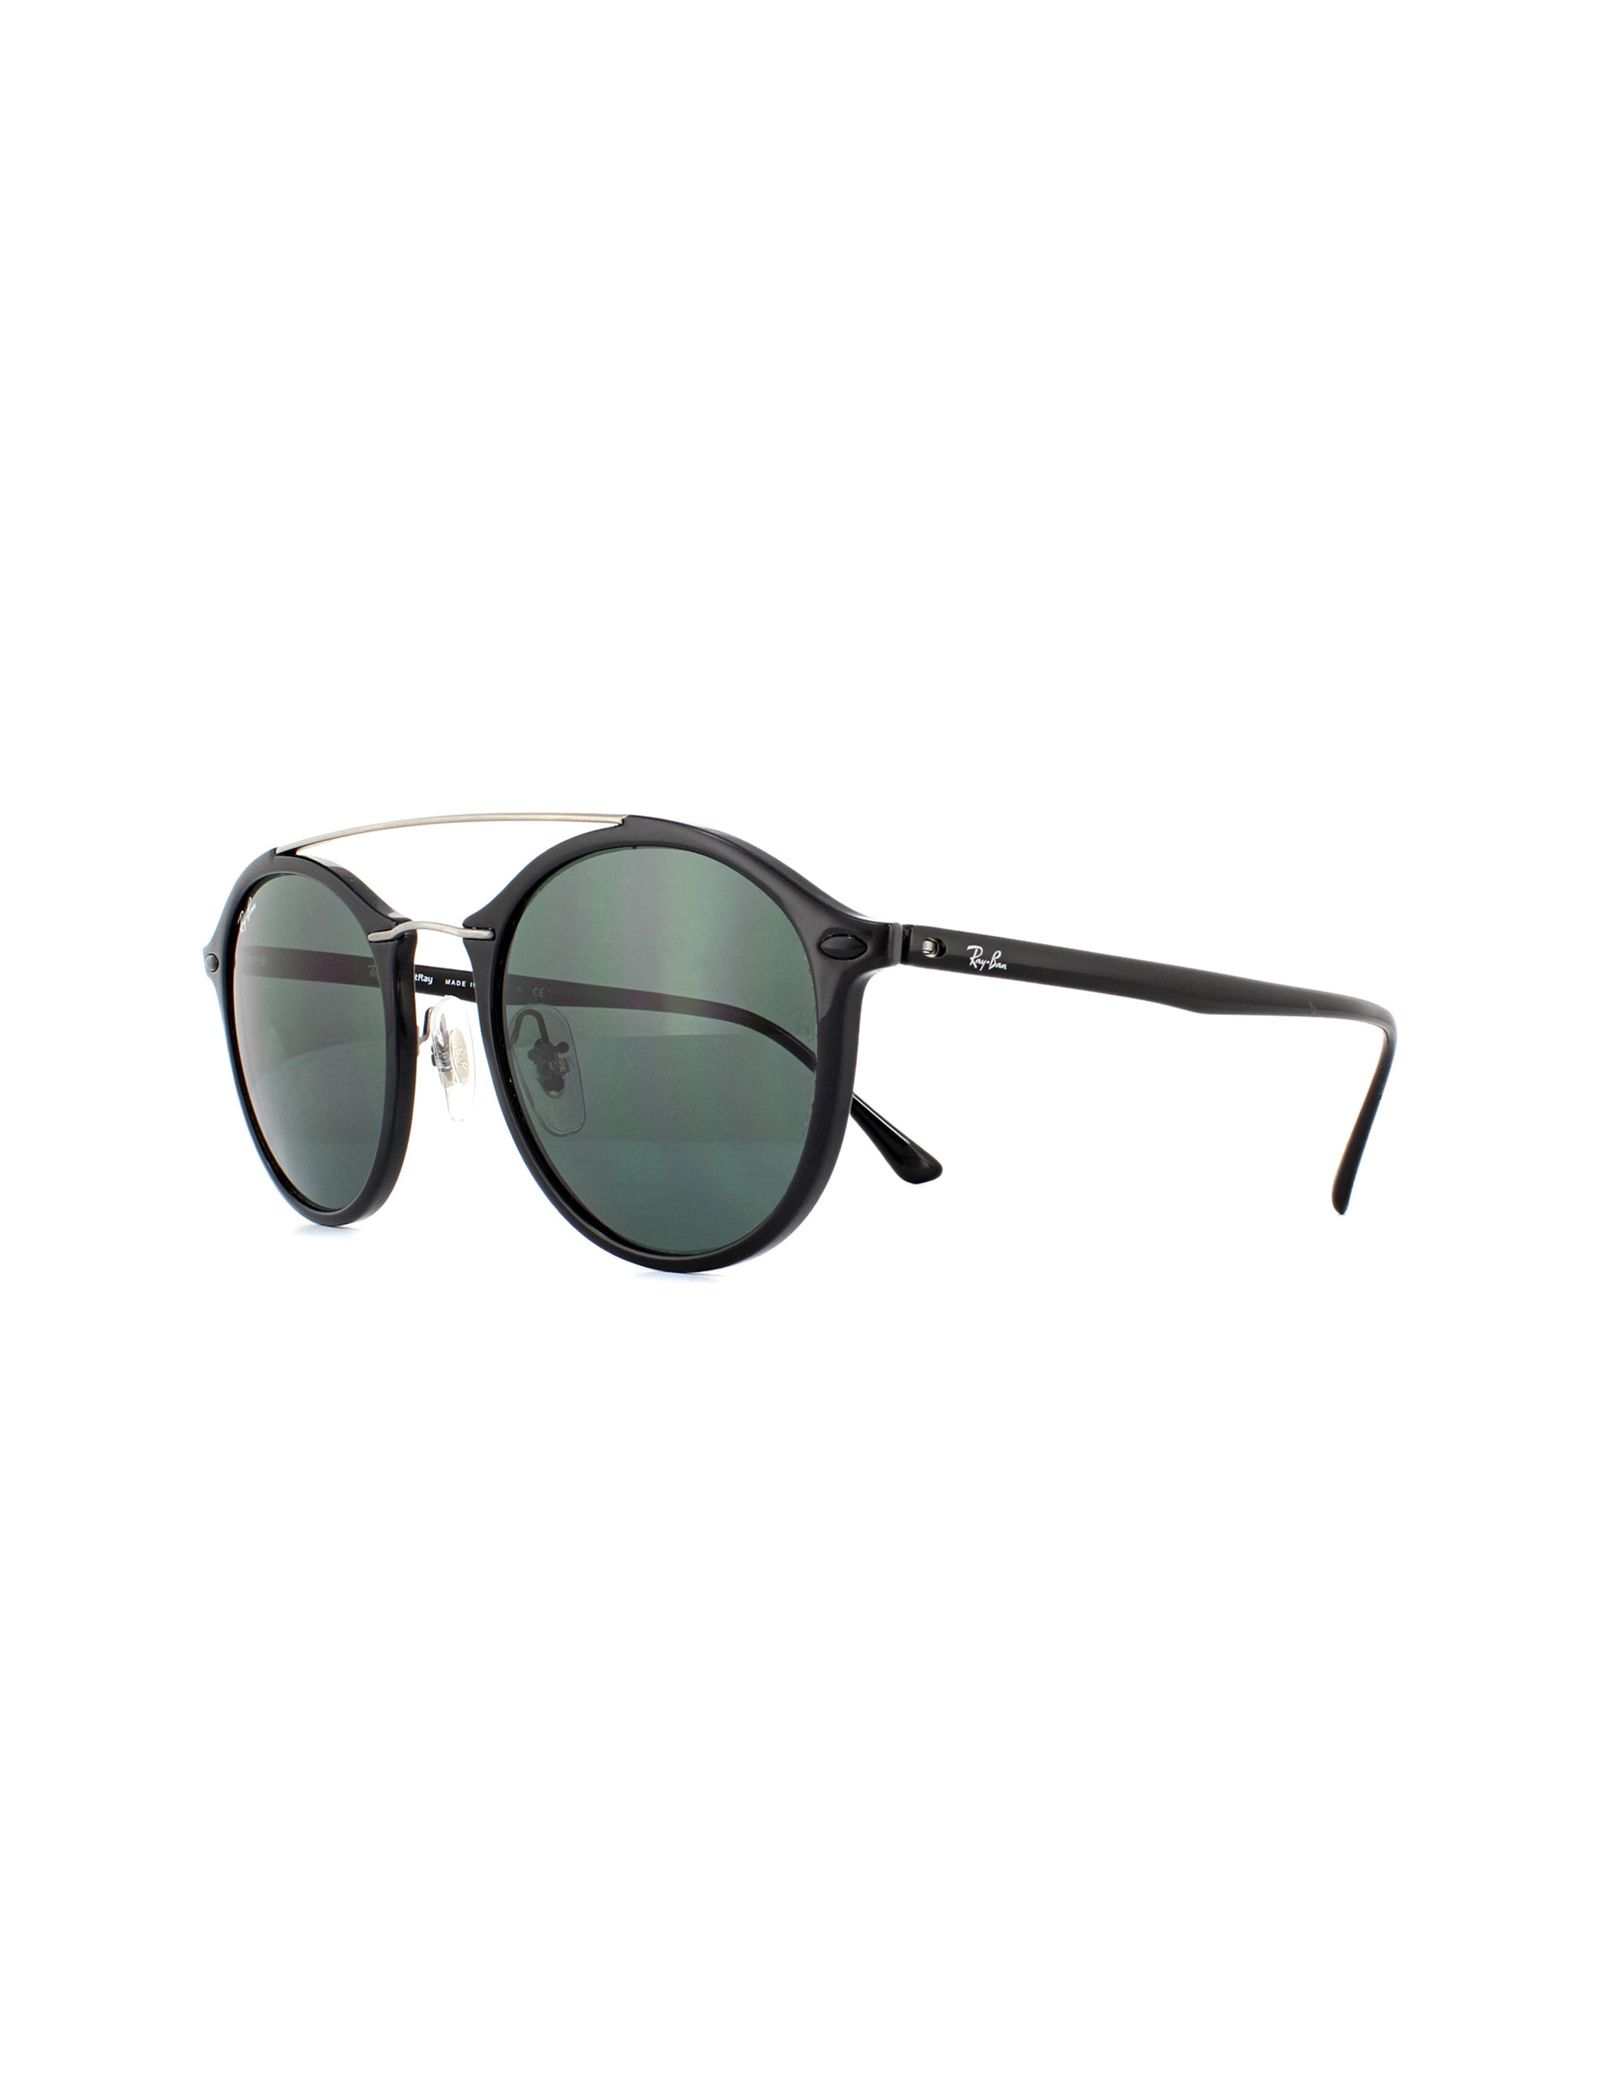 عینک آفتابی ری بن مدل 4266-601/71 -  - 4